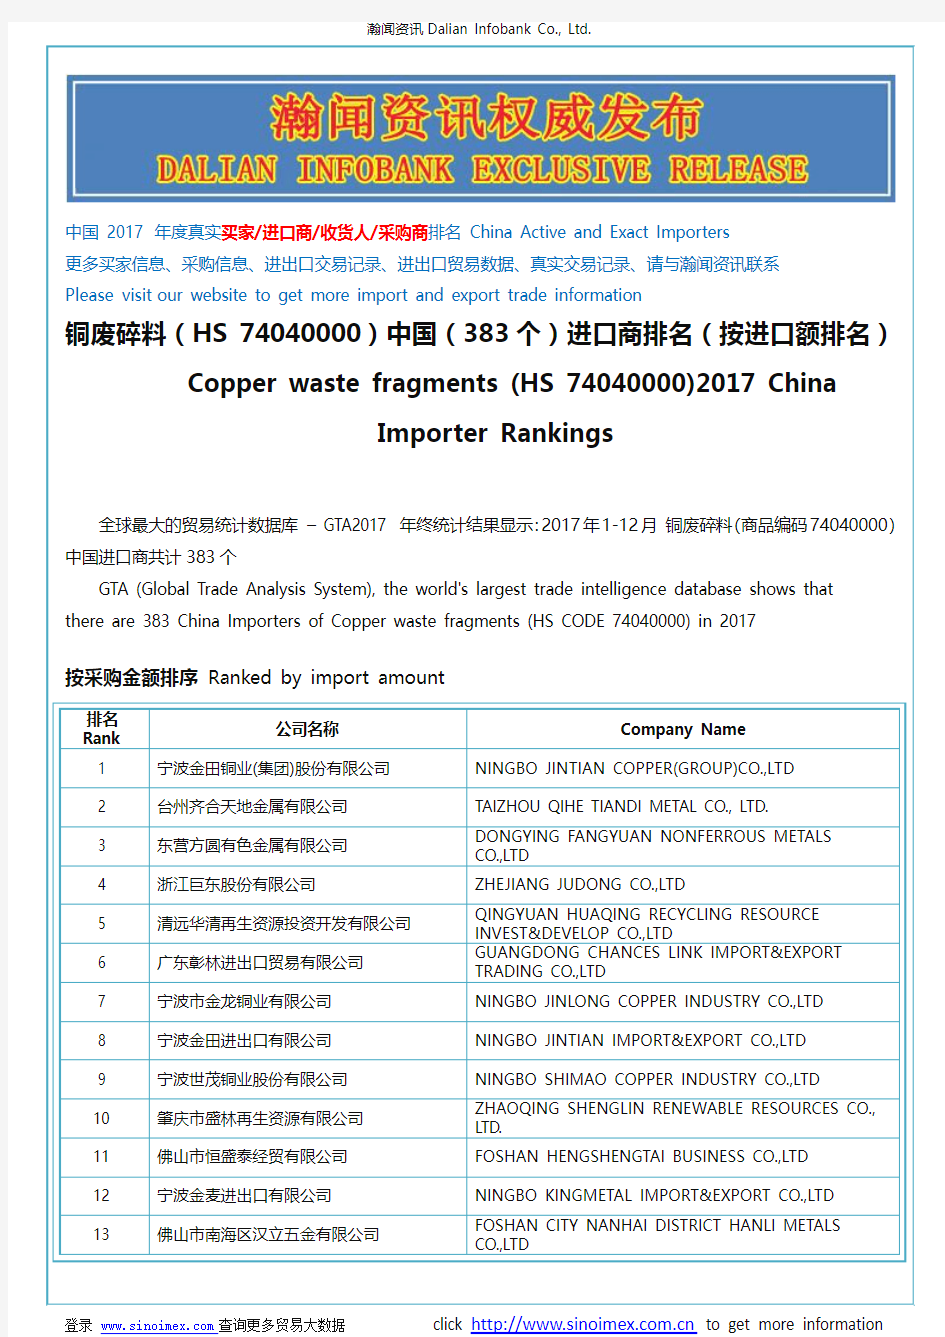 铜废碎料(HS 74040000)2017 中国(383个)进口商排名(按进口额排名)